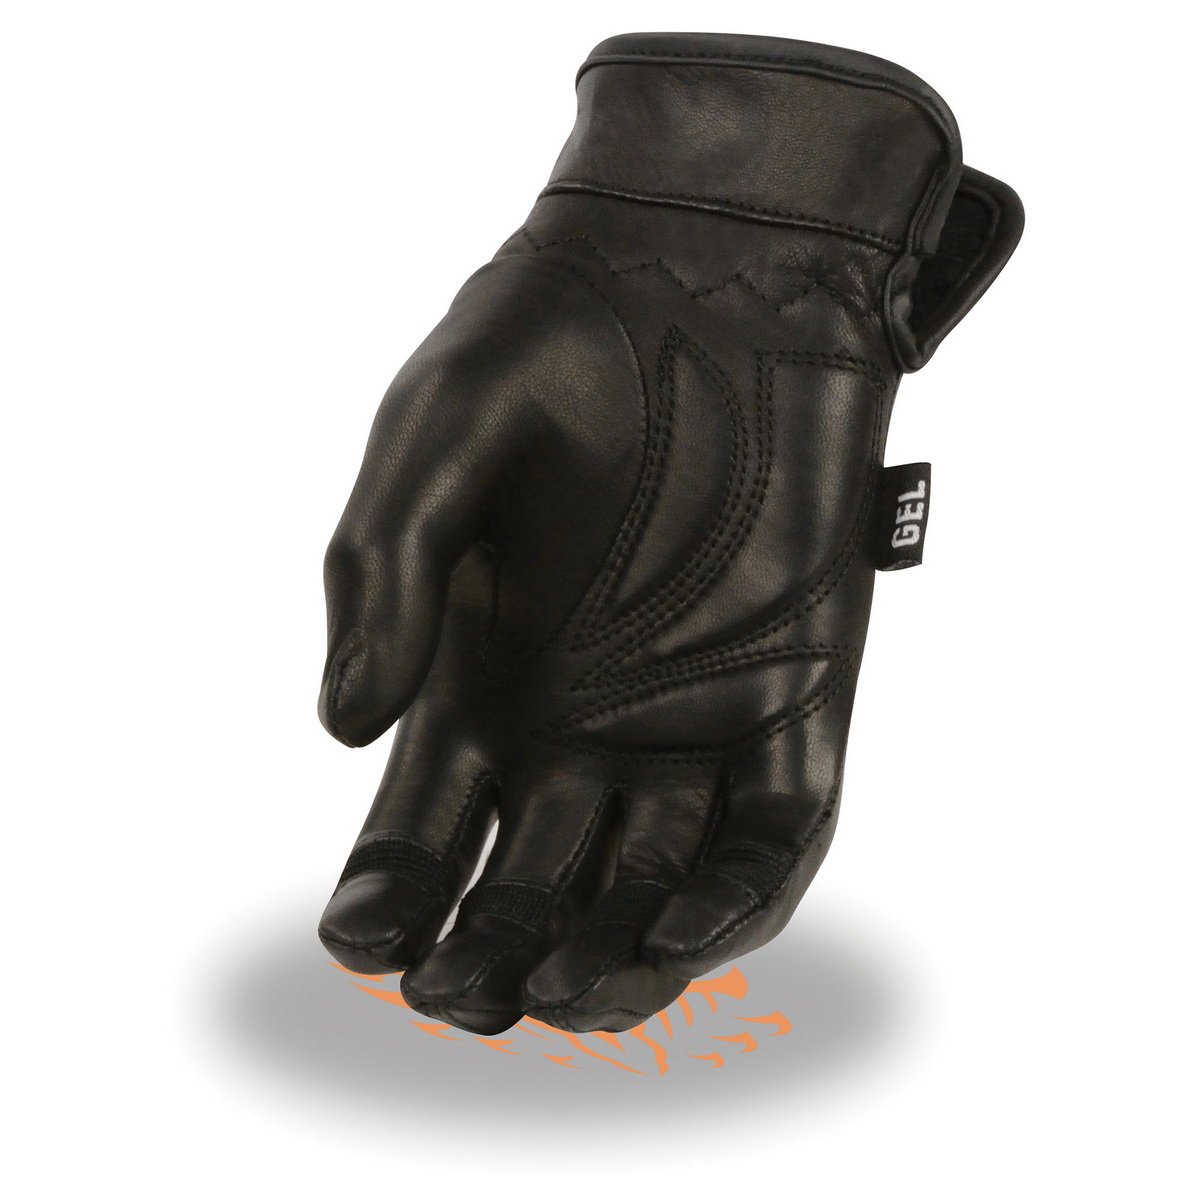 Milwaukee Leather MG7700 Ladies Black Lightweight Leather Gloves with Gel Palm - Milwaukee Leather Womens Leather Gloves